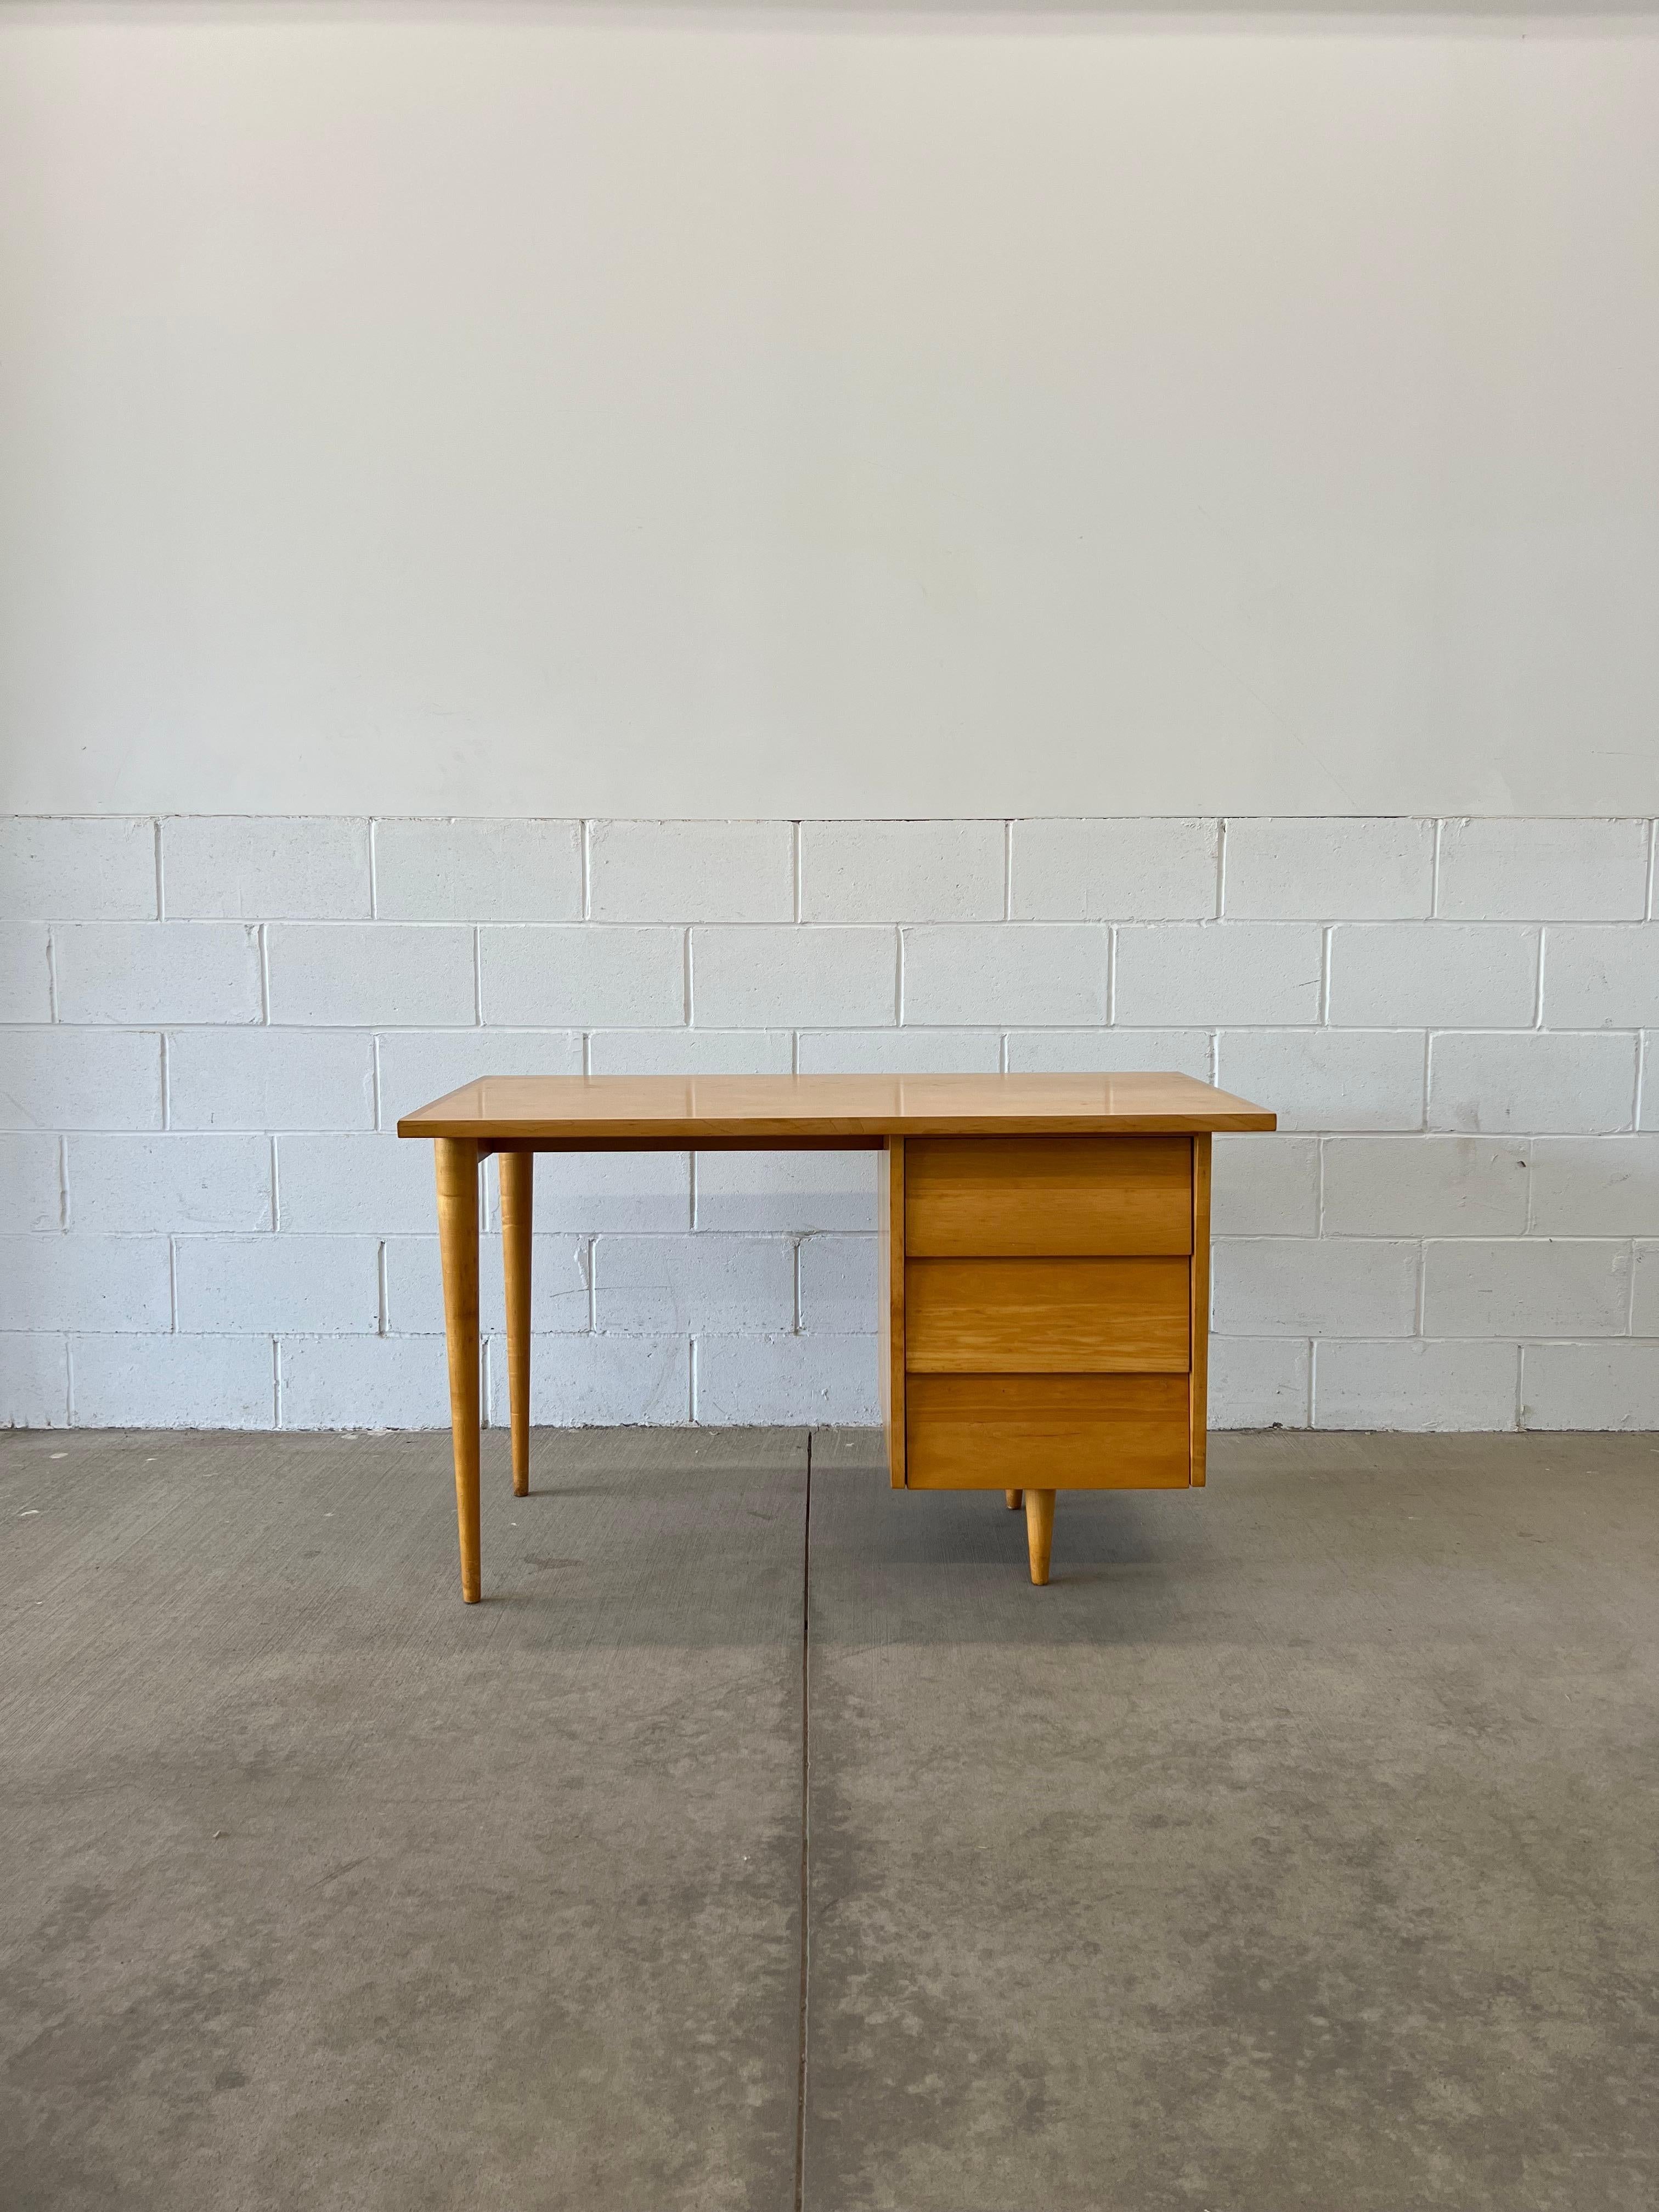 Zusammen mit dem Hocker Modell 75 gehörte dieser Schreibtisch zur ersten Designkollektion von Florence Knoll. Die Lamellenschubladen folgen der gleichen Designsprache, die in einer Vielzahl von Gehäusen wie Kommoden, Nachttischen und verschiedenen